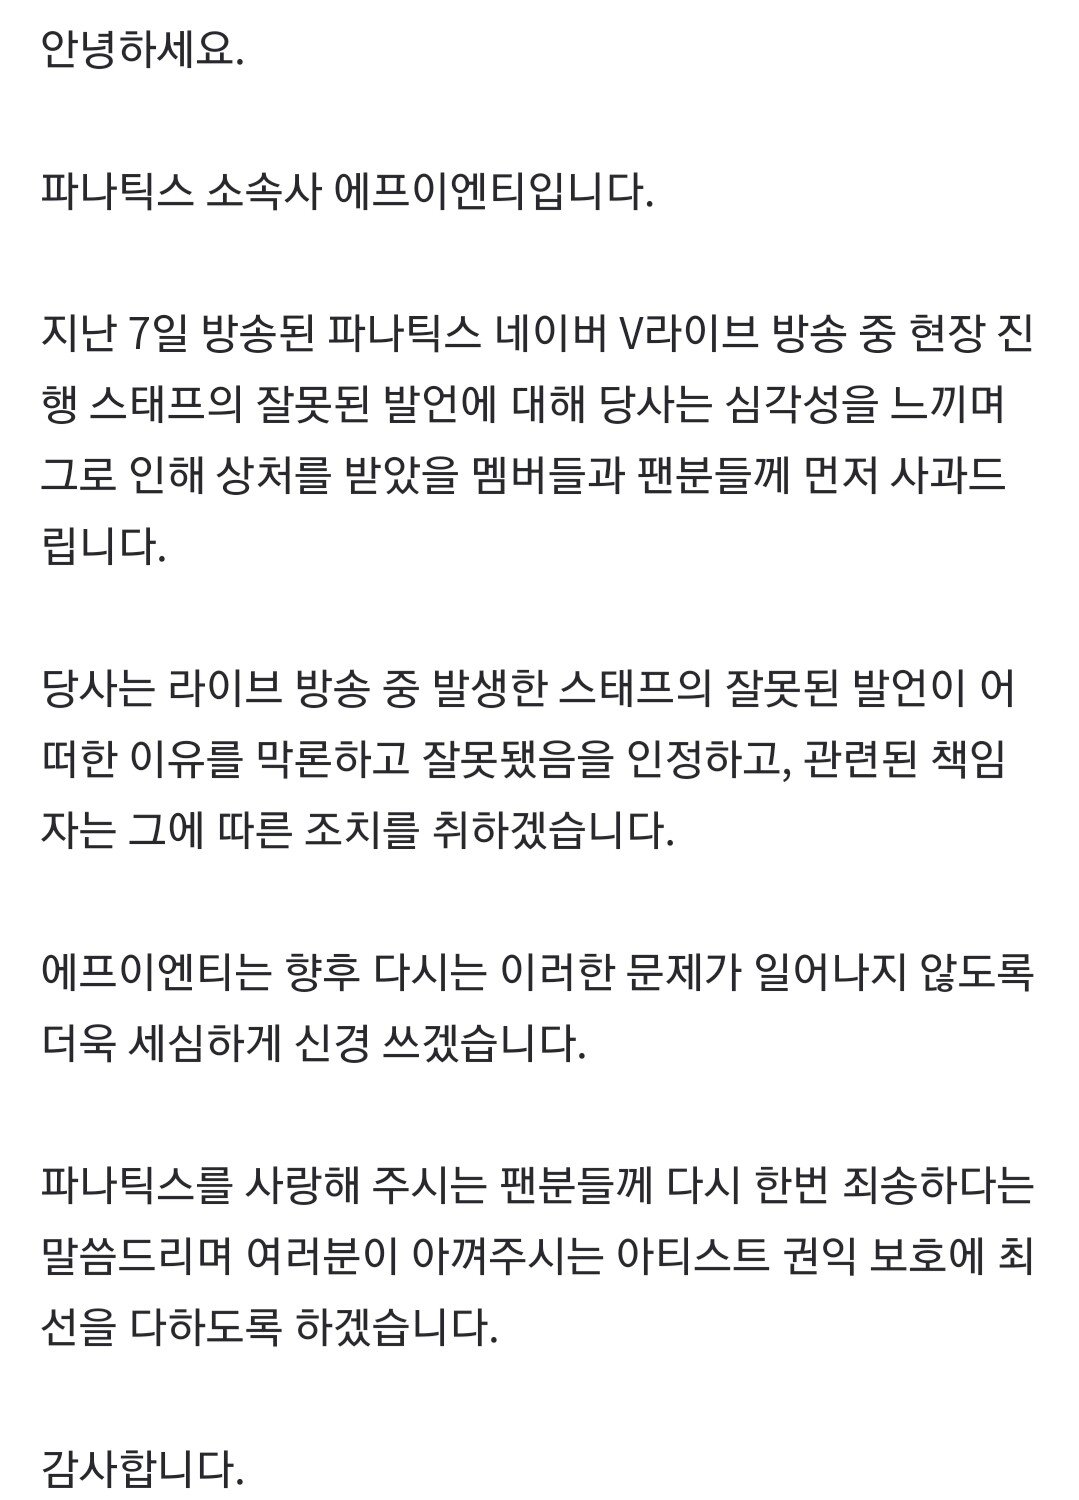 파나틱스 브이앱 논란 소속사 사과문